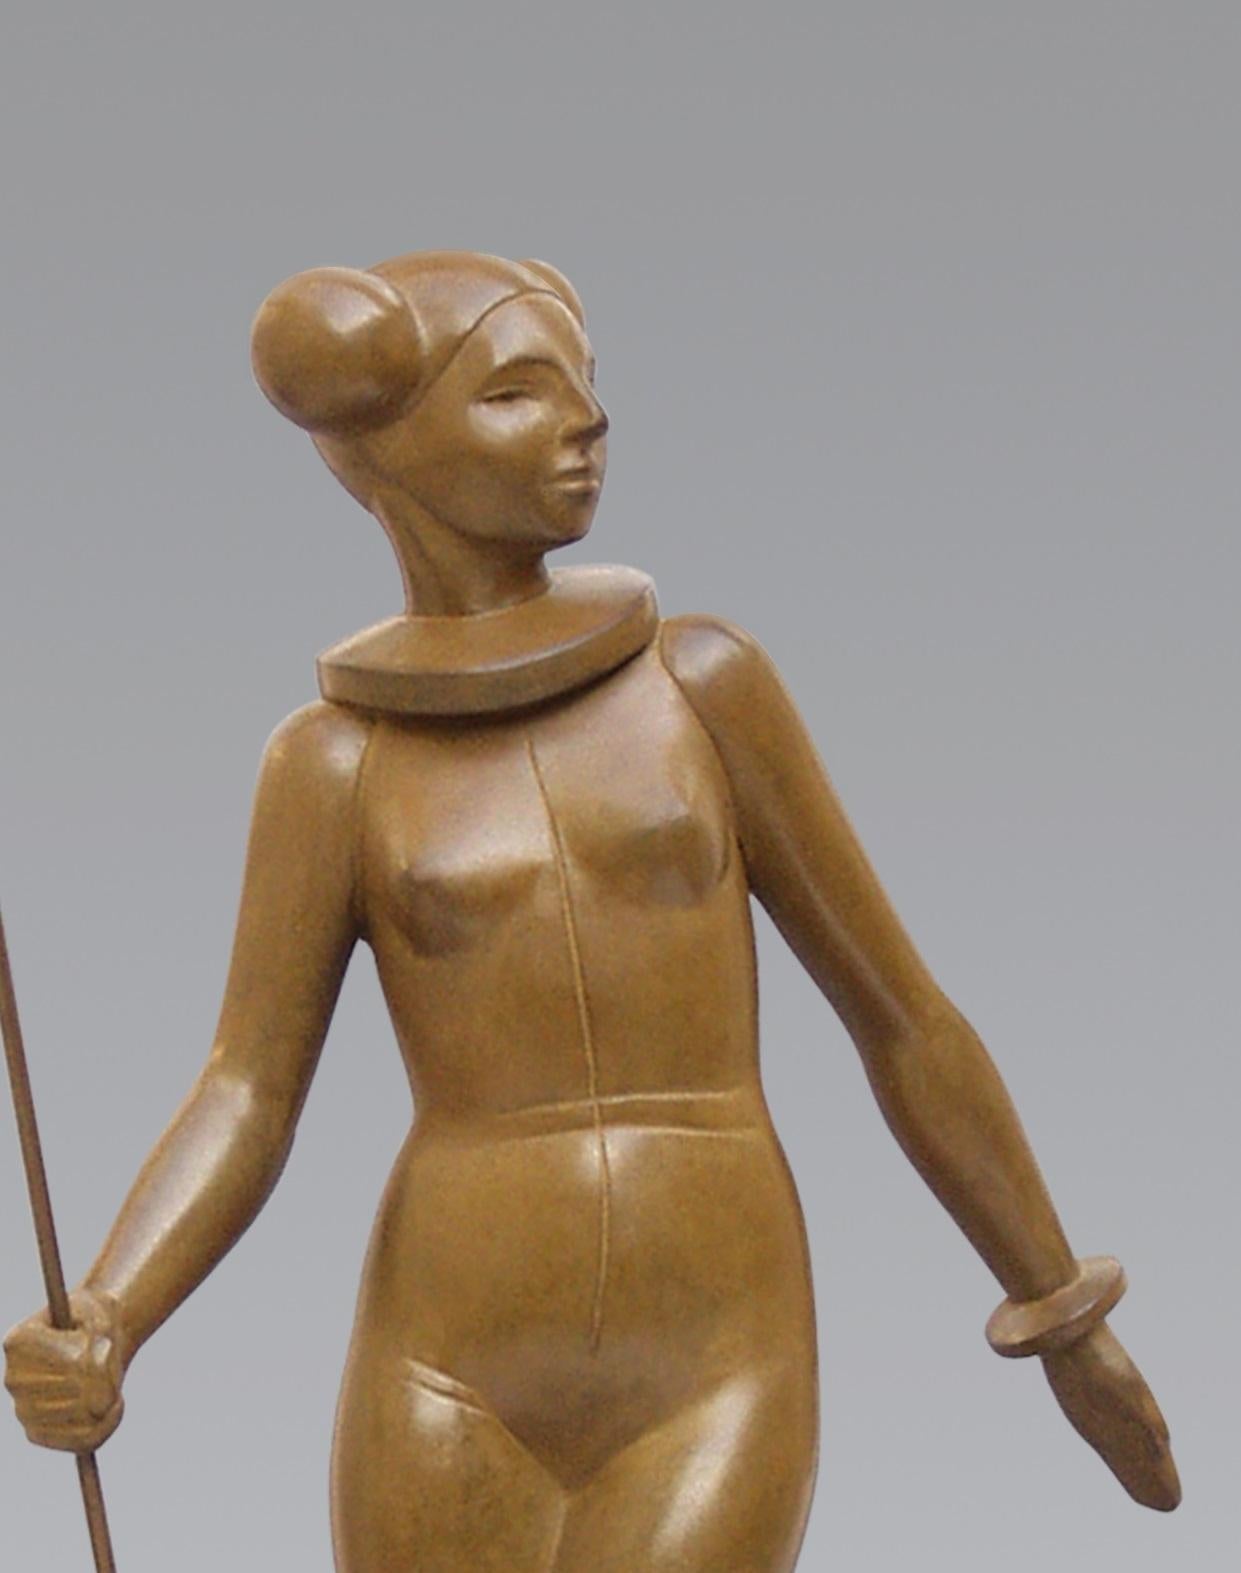 Leia Bronze Sculpture Princesse Nue Femme Starwars Femme Femme Contemporaine
Les statues d'Erwin Meijer sont subtiles avec une écriture reconnaissable et personnelle.
Ils respirent l'atmosphère d'un poème narratif, où le lecteur ne rencontre pas